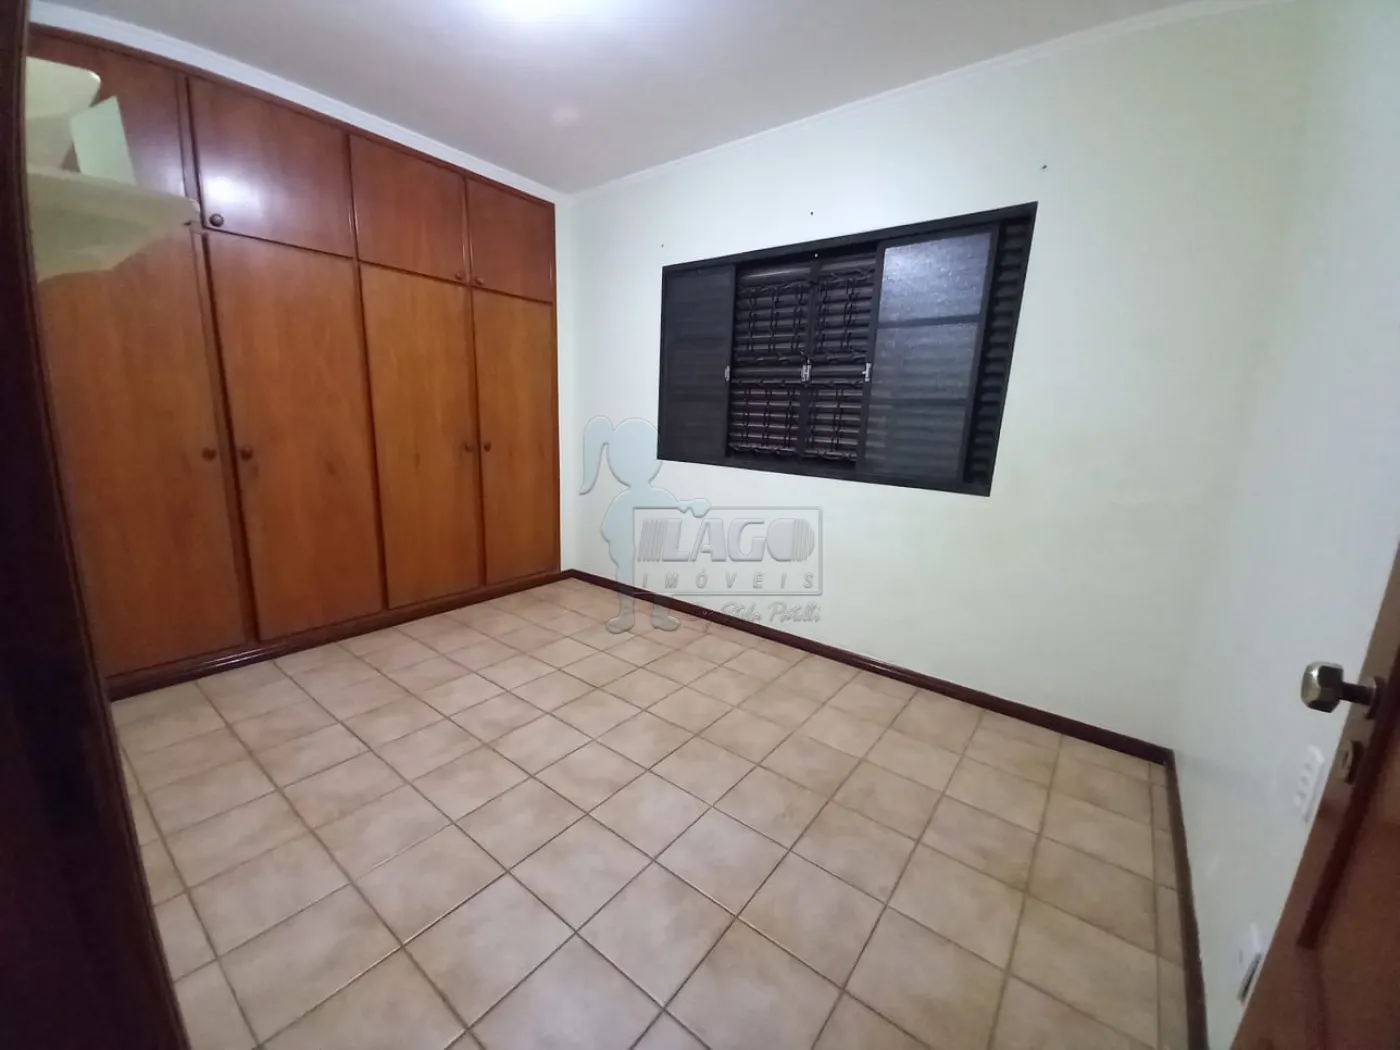 Alugar Apartamentos / Padrão em Ribeirão Preto R$ 1.750,00 - Foto 10